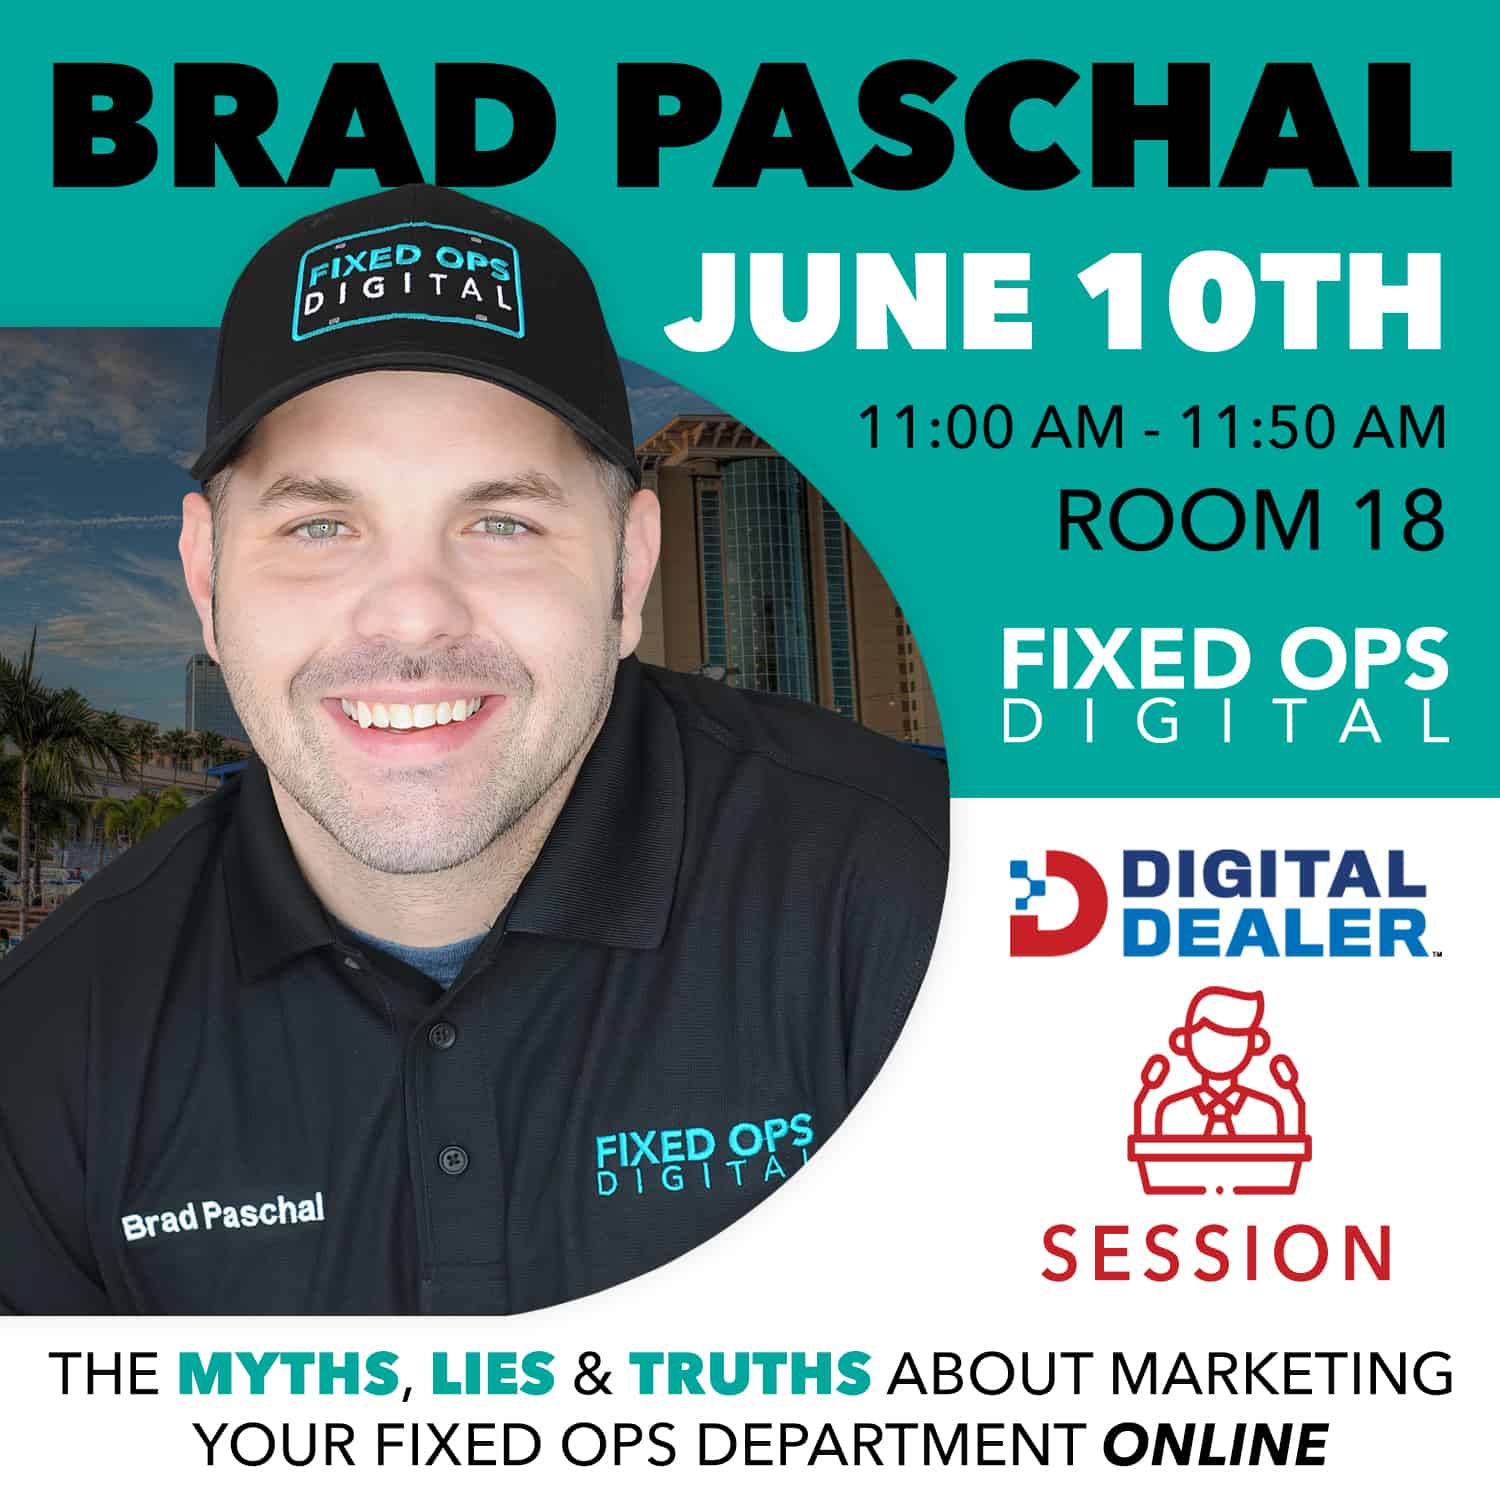 Brad Paschal Digital Dealer Session